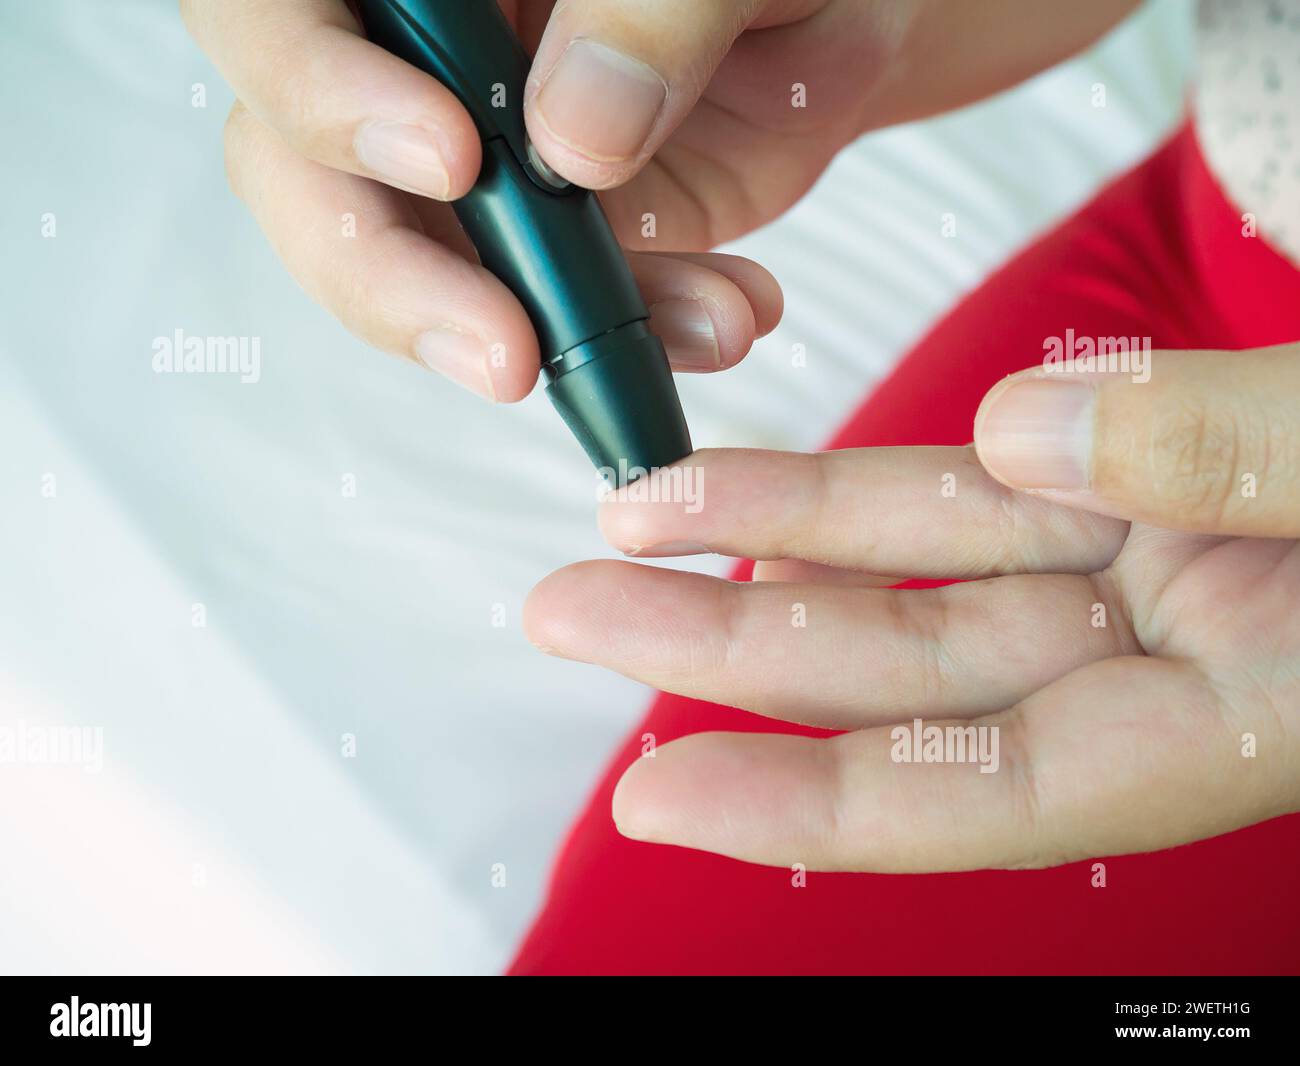 Frau mit lanzettfischchens am Finger, Diabetes Test überprüfung der Blutzuckerspiegel Stockfoto